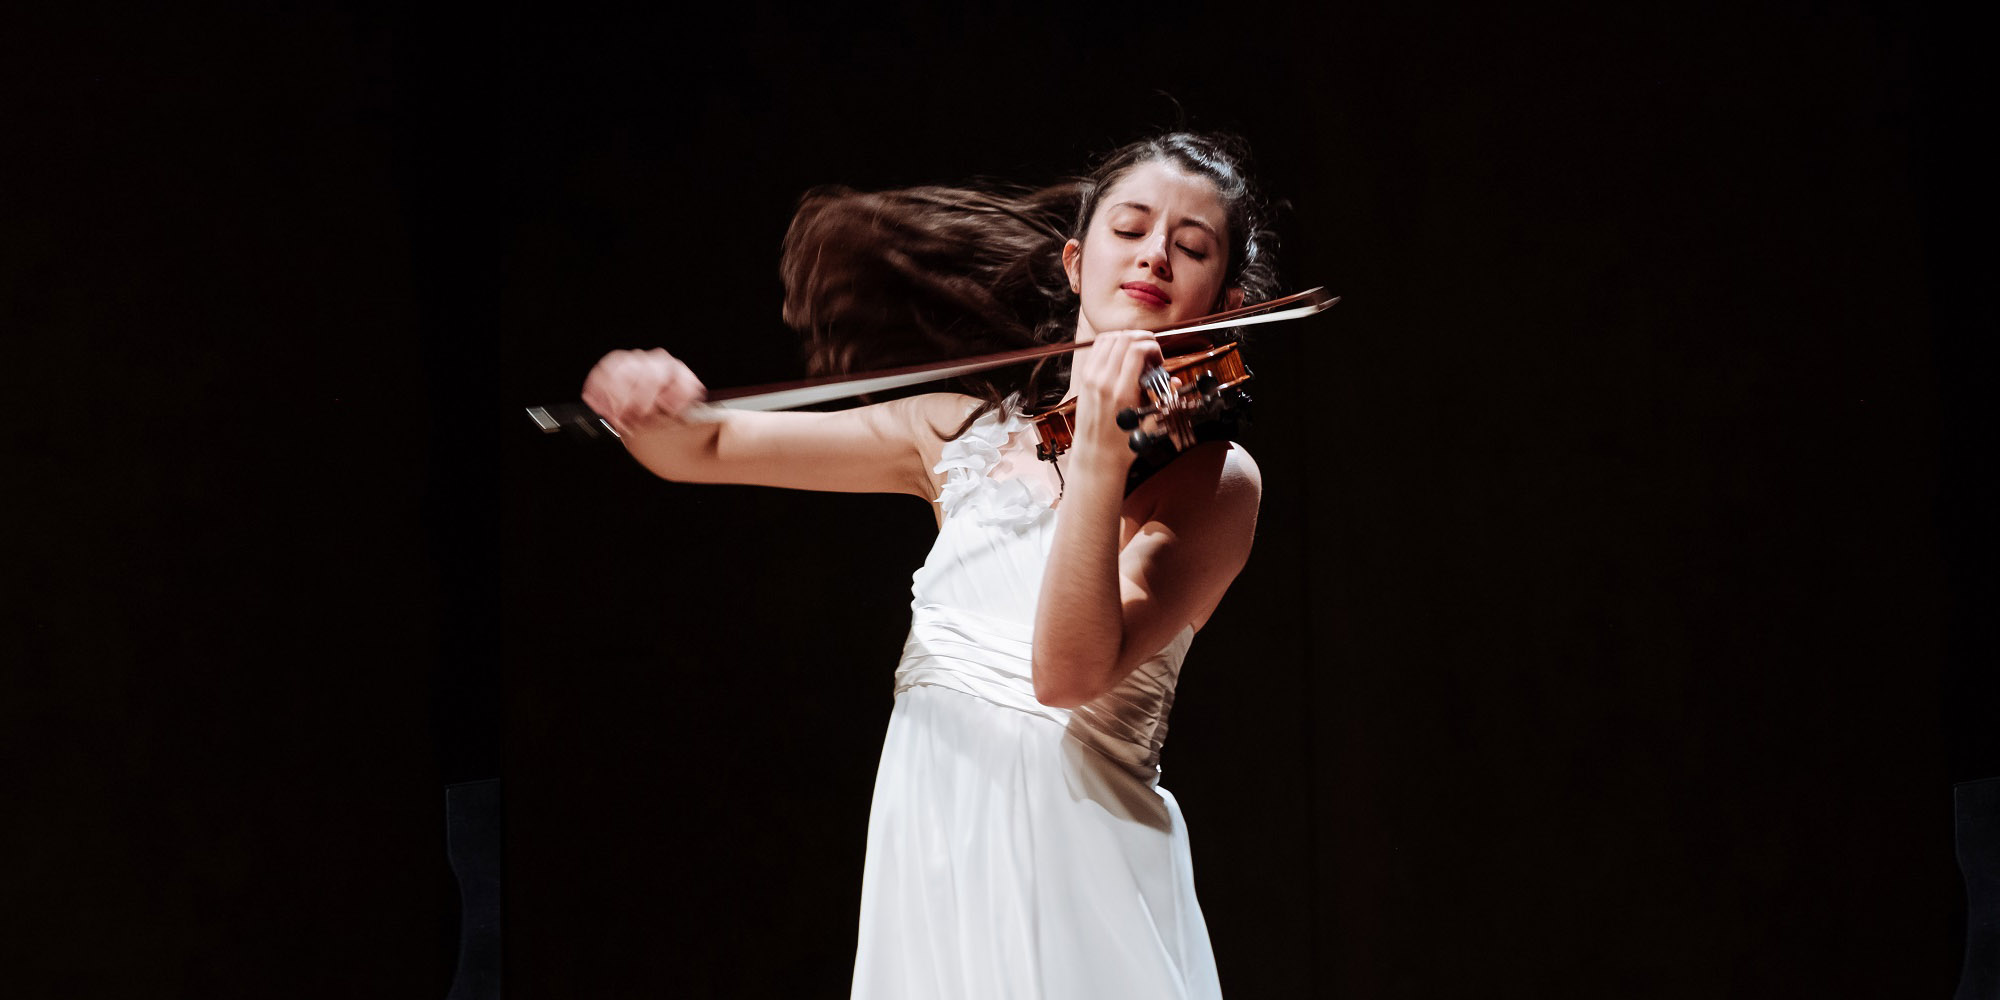 María Dueñas spielt Sibelius